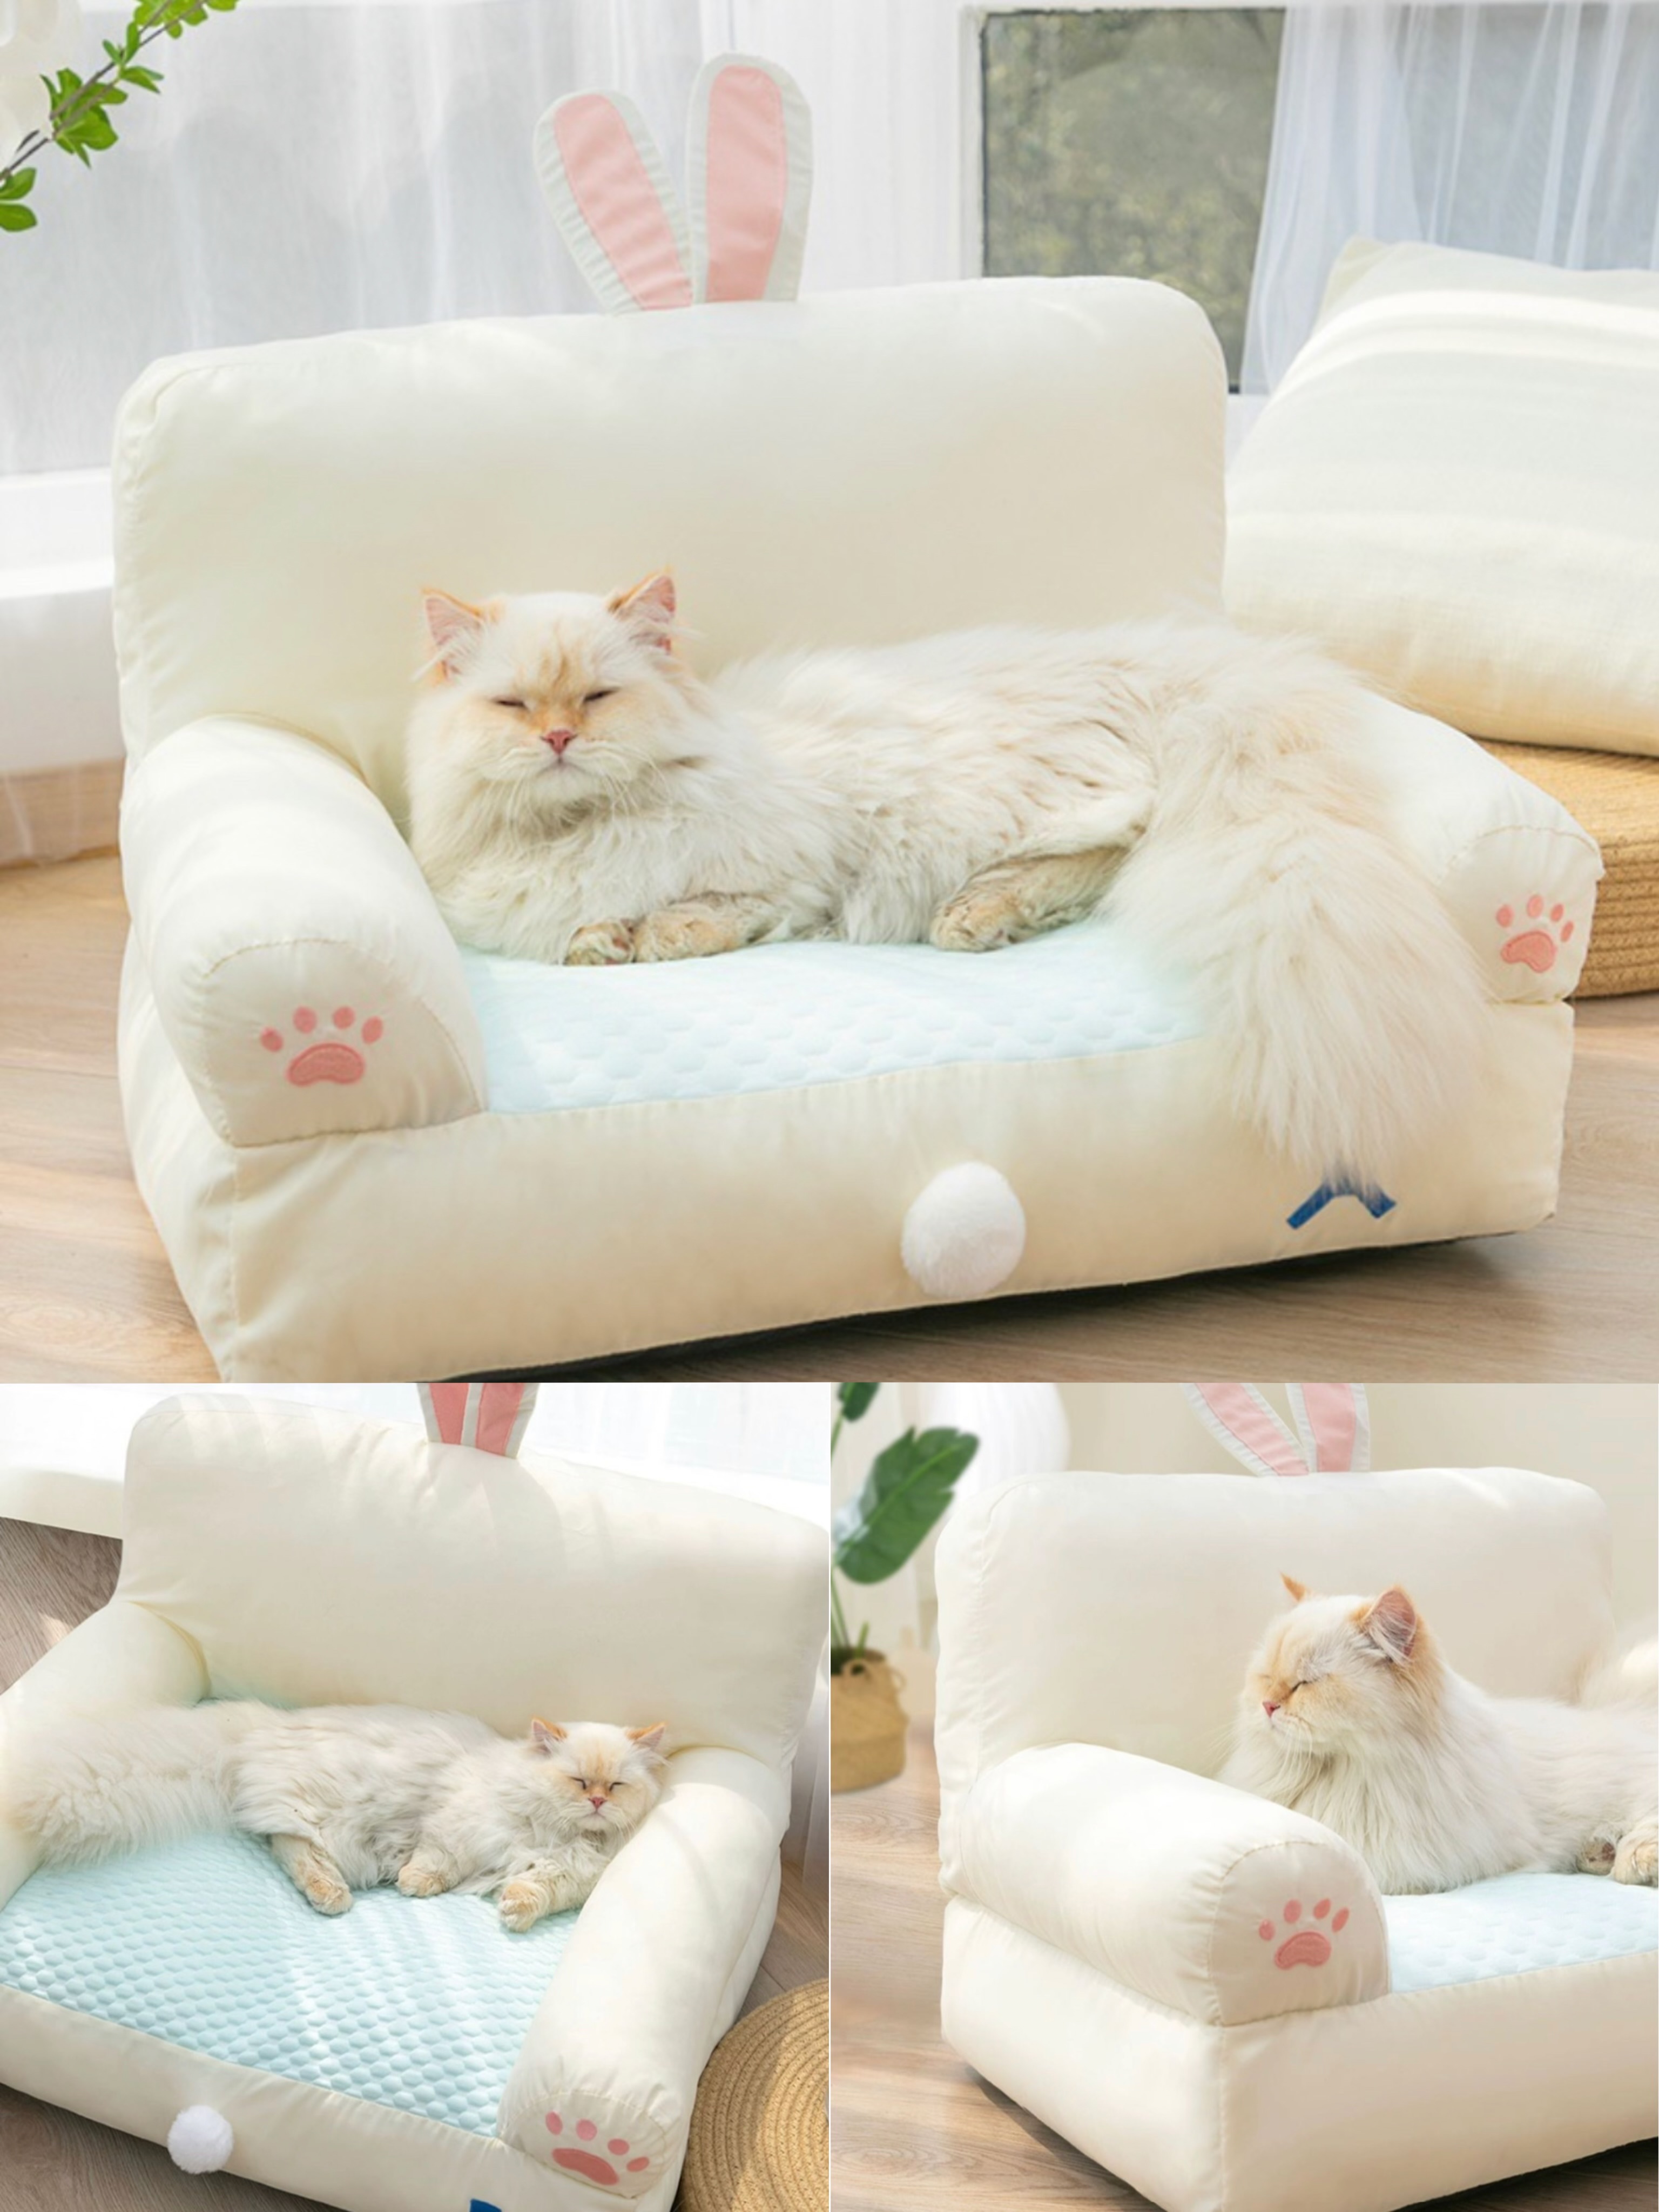 寵物小沙發 可拆洗 涼墊材質 如需其他產品請分開下單